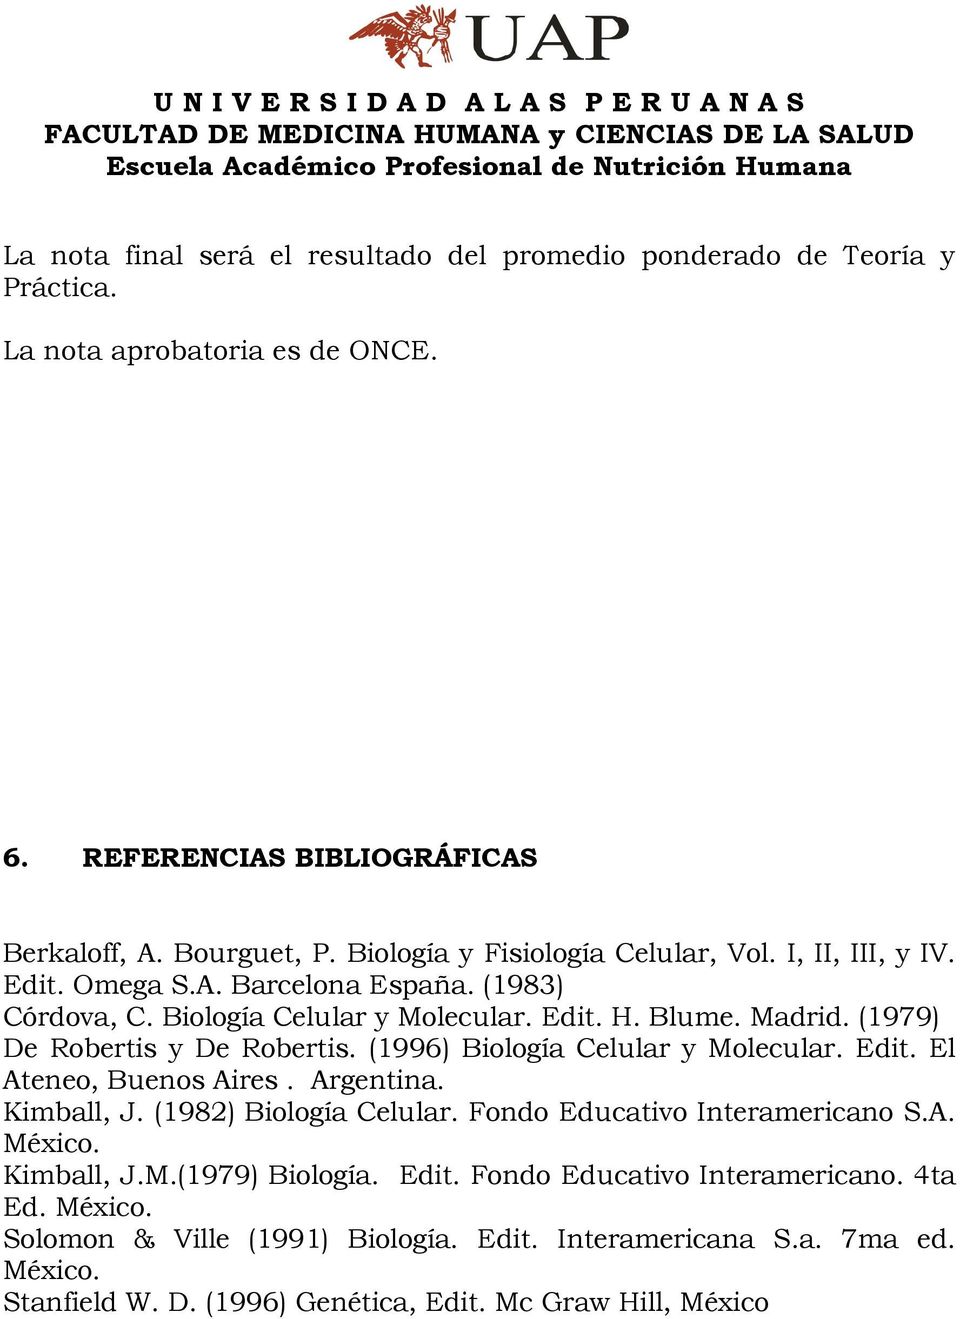 (1979) De Robertis y De Robertis. (1996) Biología Celular y Molecular. Edit. El teneo, Buenos ires. rgentina. Kimball, J. (1982) Biología Celular. Fondo Educativo Interamericano S.